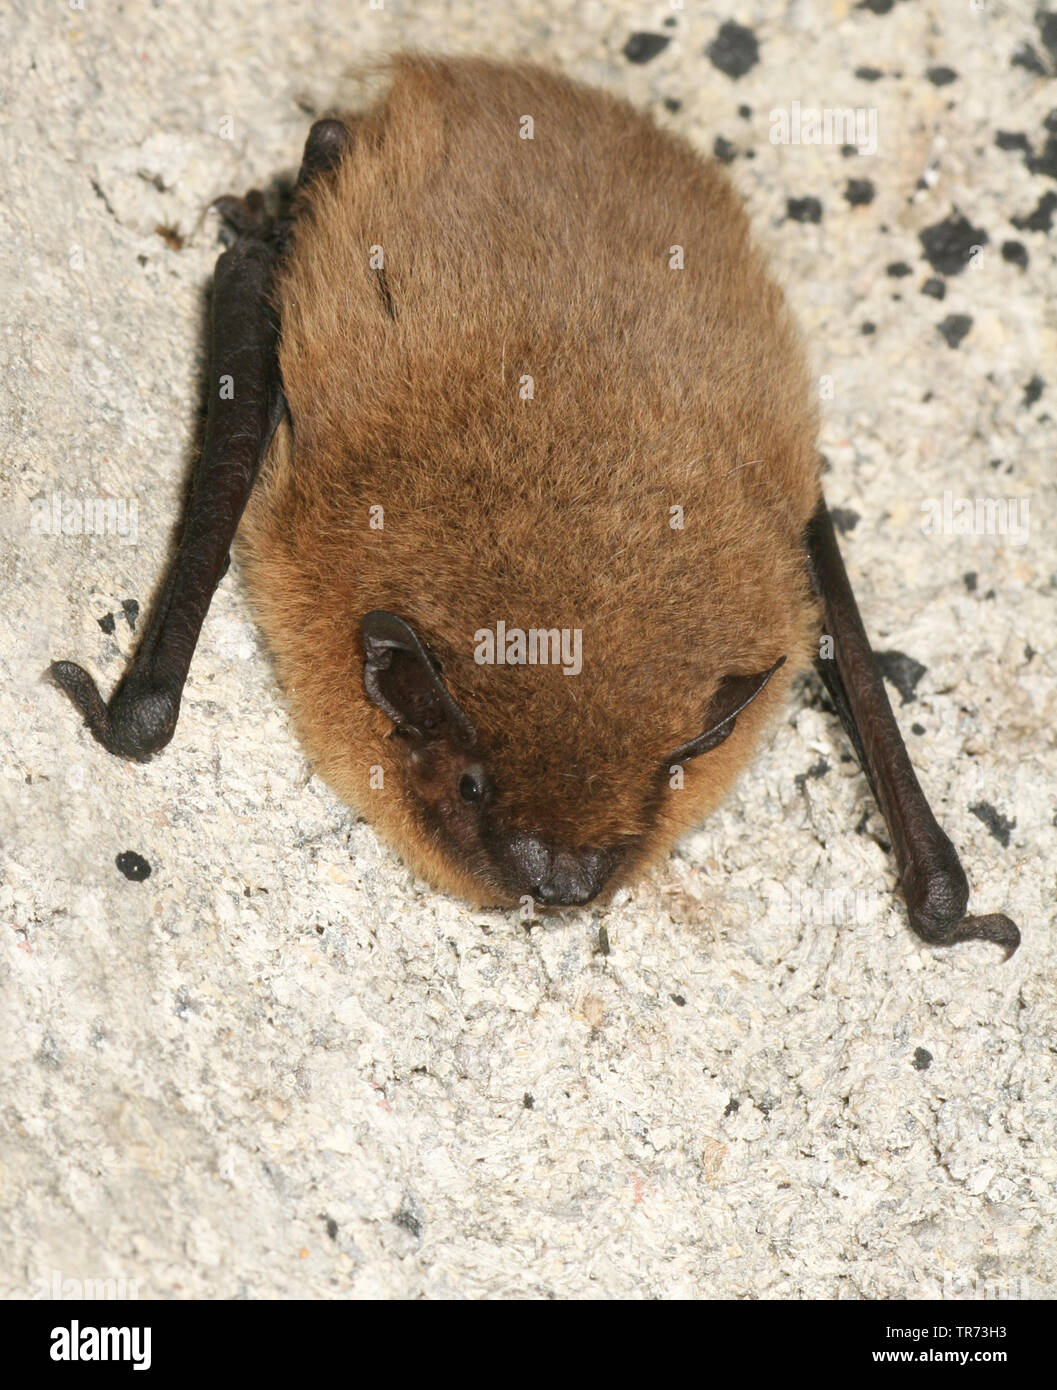 Comune (pipistrelle Pipistrellus pipistrellus), appeso a una parete, Paesi Bassi Foto Stock